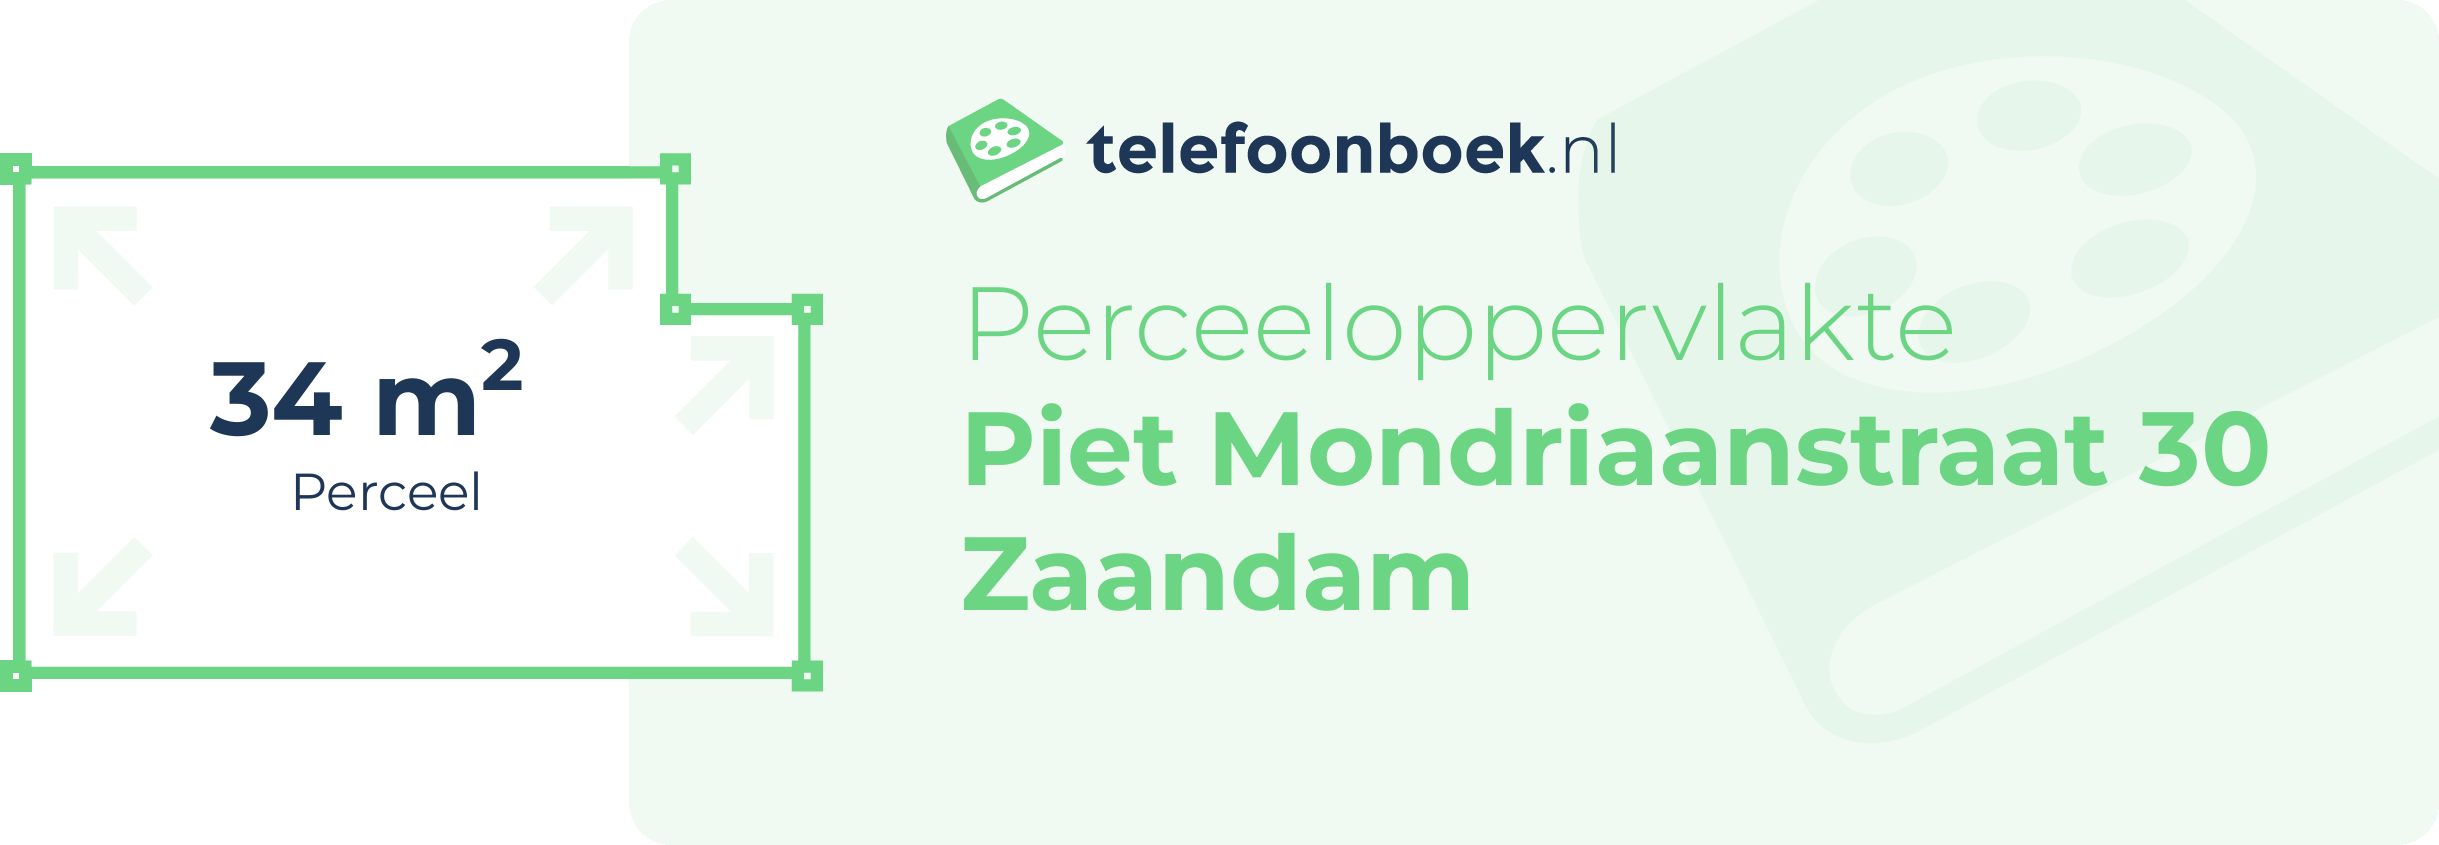 Perceeloppervlakte Piet Mondriaanstraat 30 Zaandam